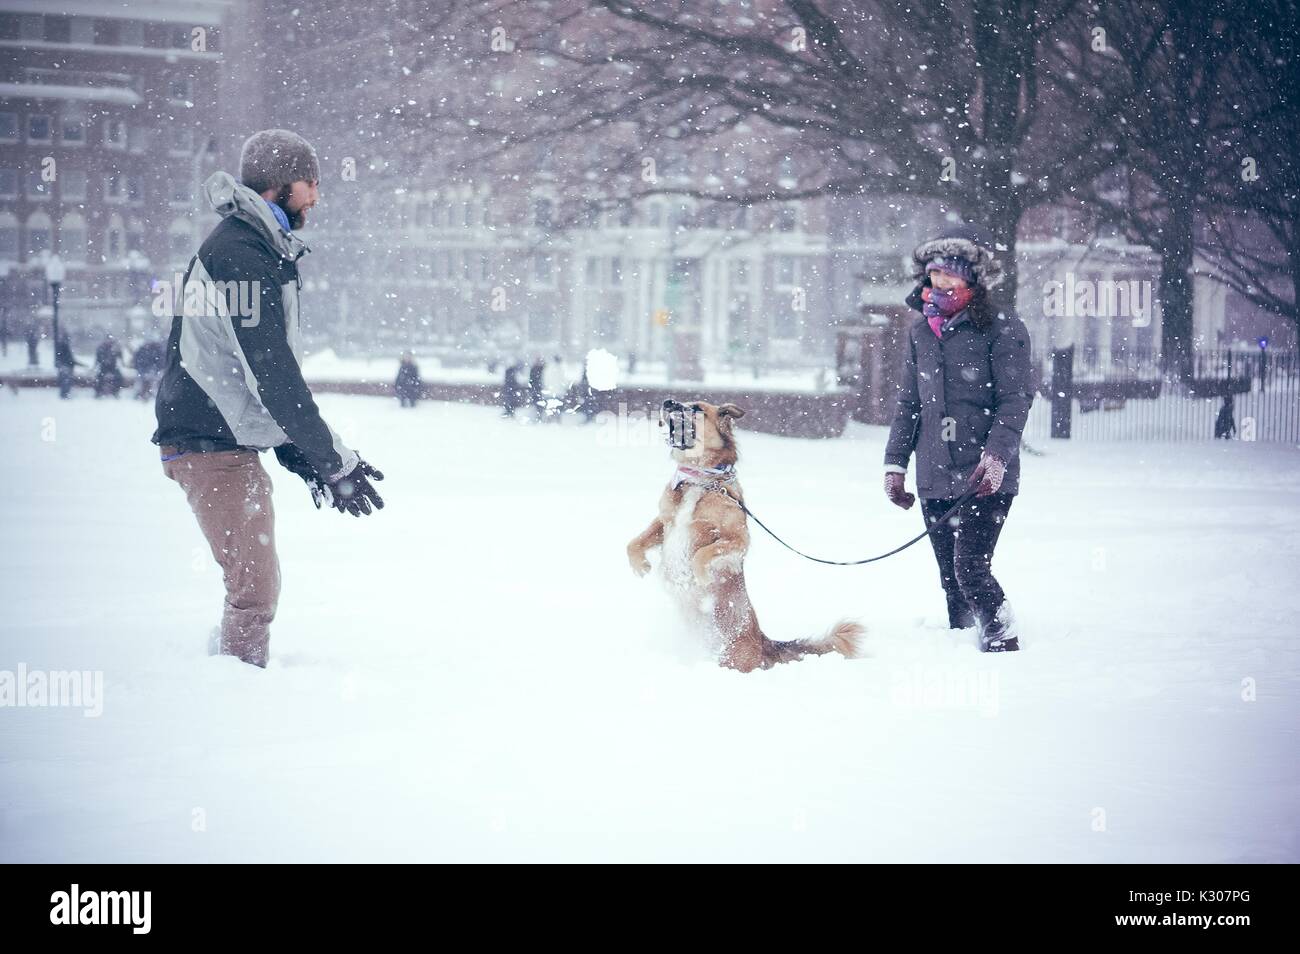 Ein Hund steht auf seinen Hinterbeinen mit Schnee bedeckt, während seine Besitzerin ihm von Leine und seine männlichen Eigentümer hält vor ihm steht das Werfen mit Schneebällen, auf einem Snow Day an der Johns Hopkins University, Baltimore, Maryland, 2016. Stockfoto